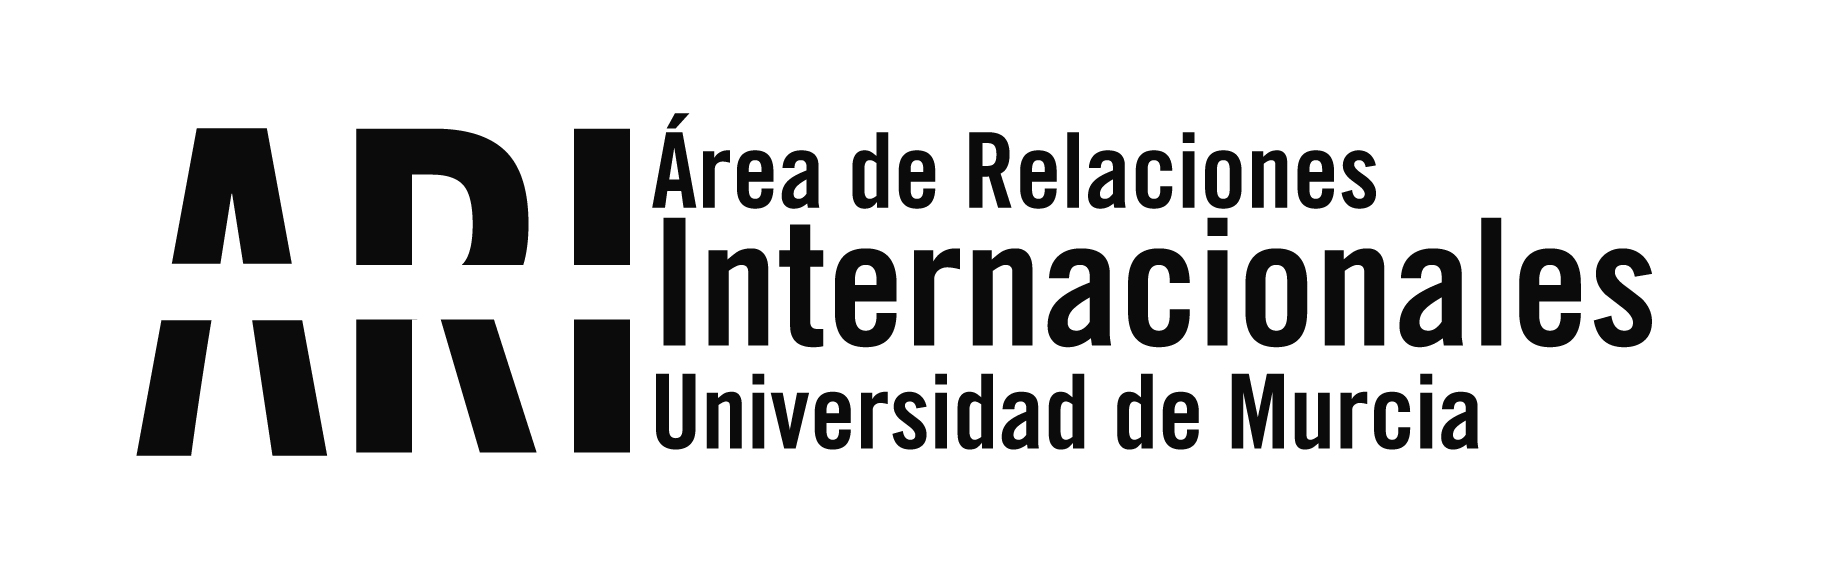 Santander Investigación - Área de Relaciones Internacionales